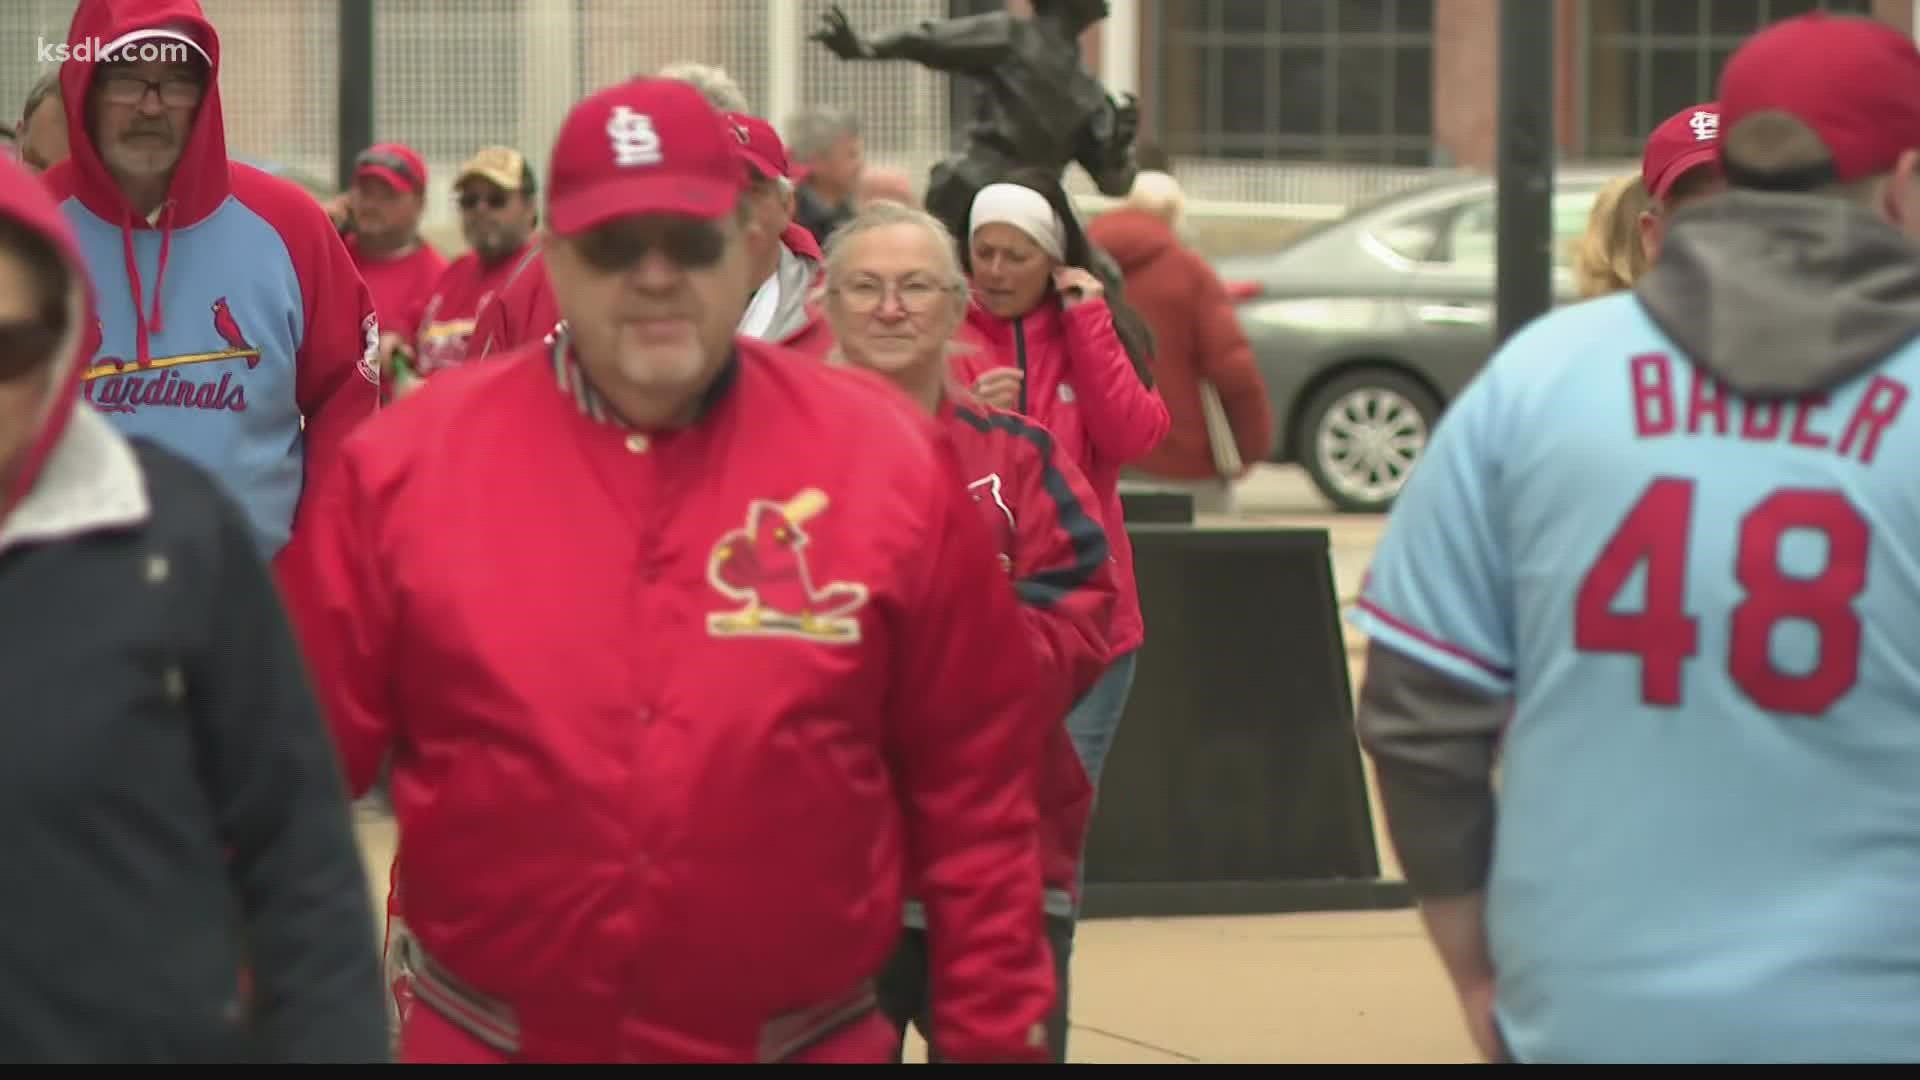 St. Louis Cardinals Fans